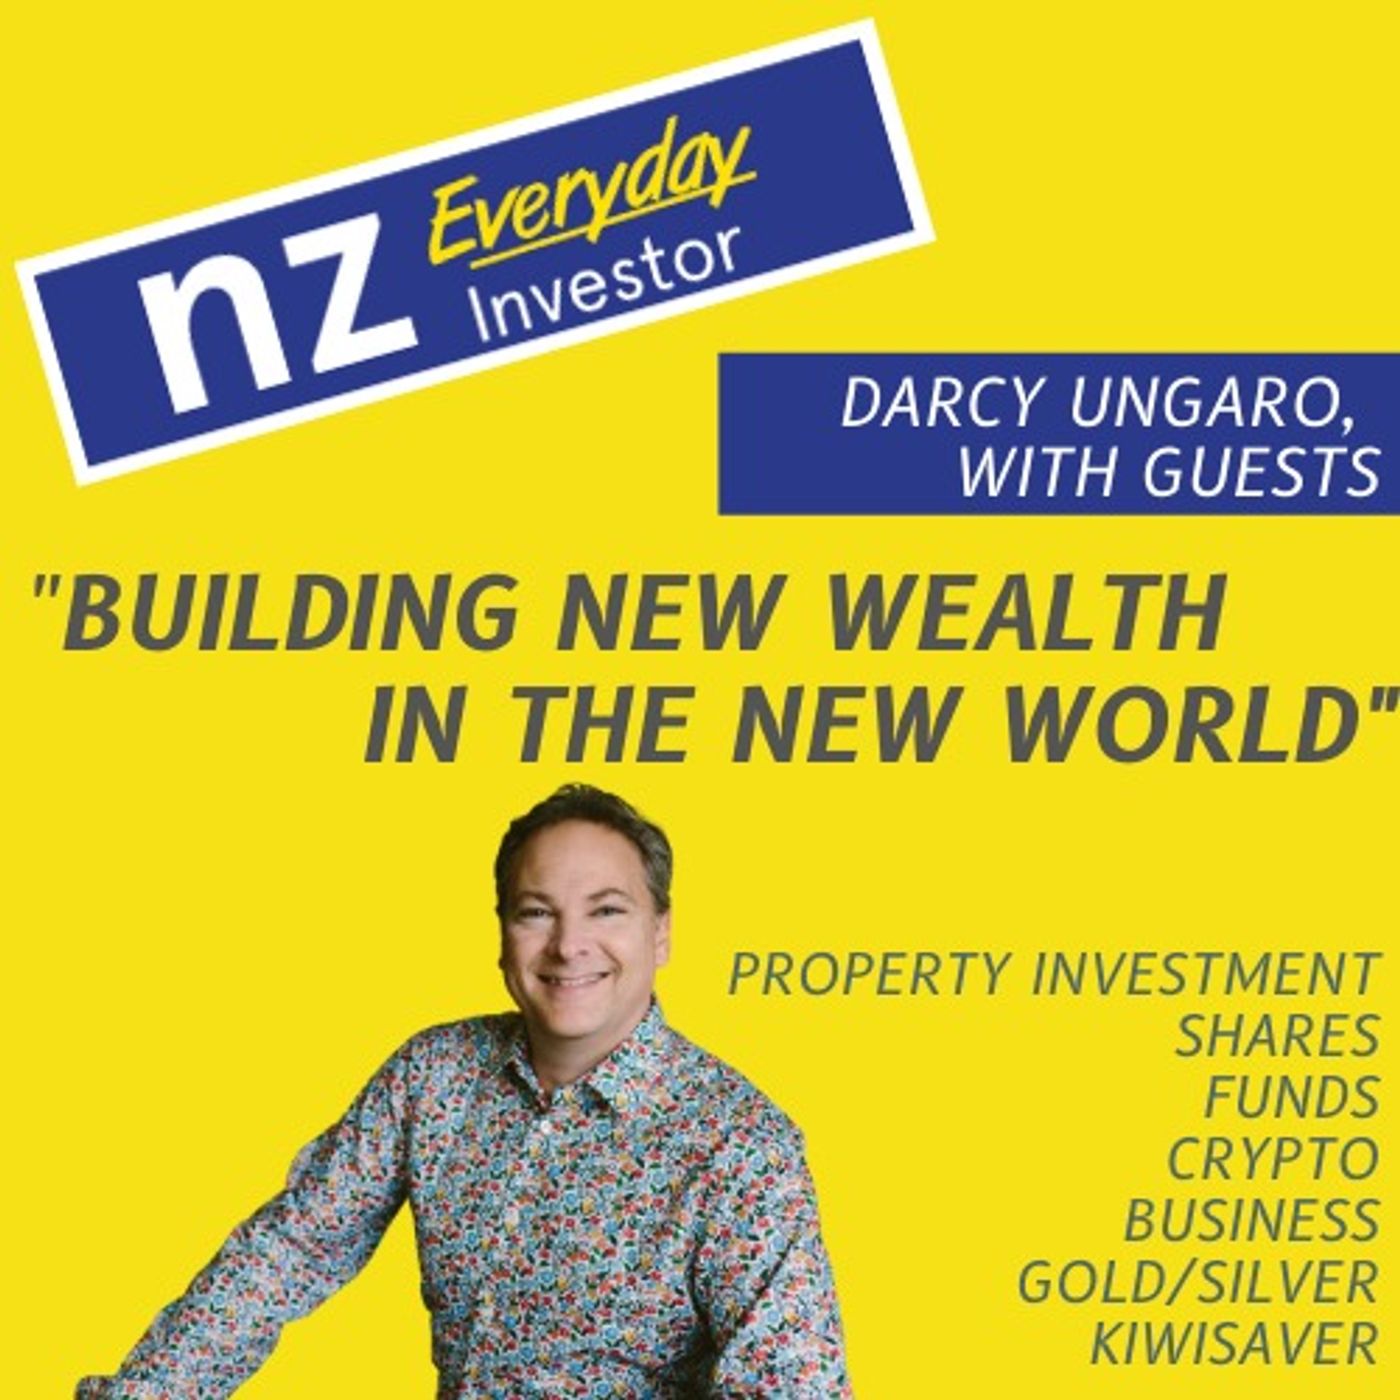 NZ Everyday Investor